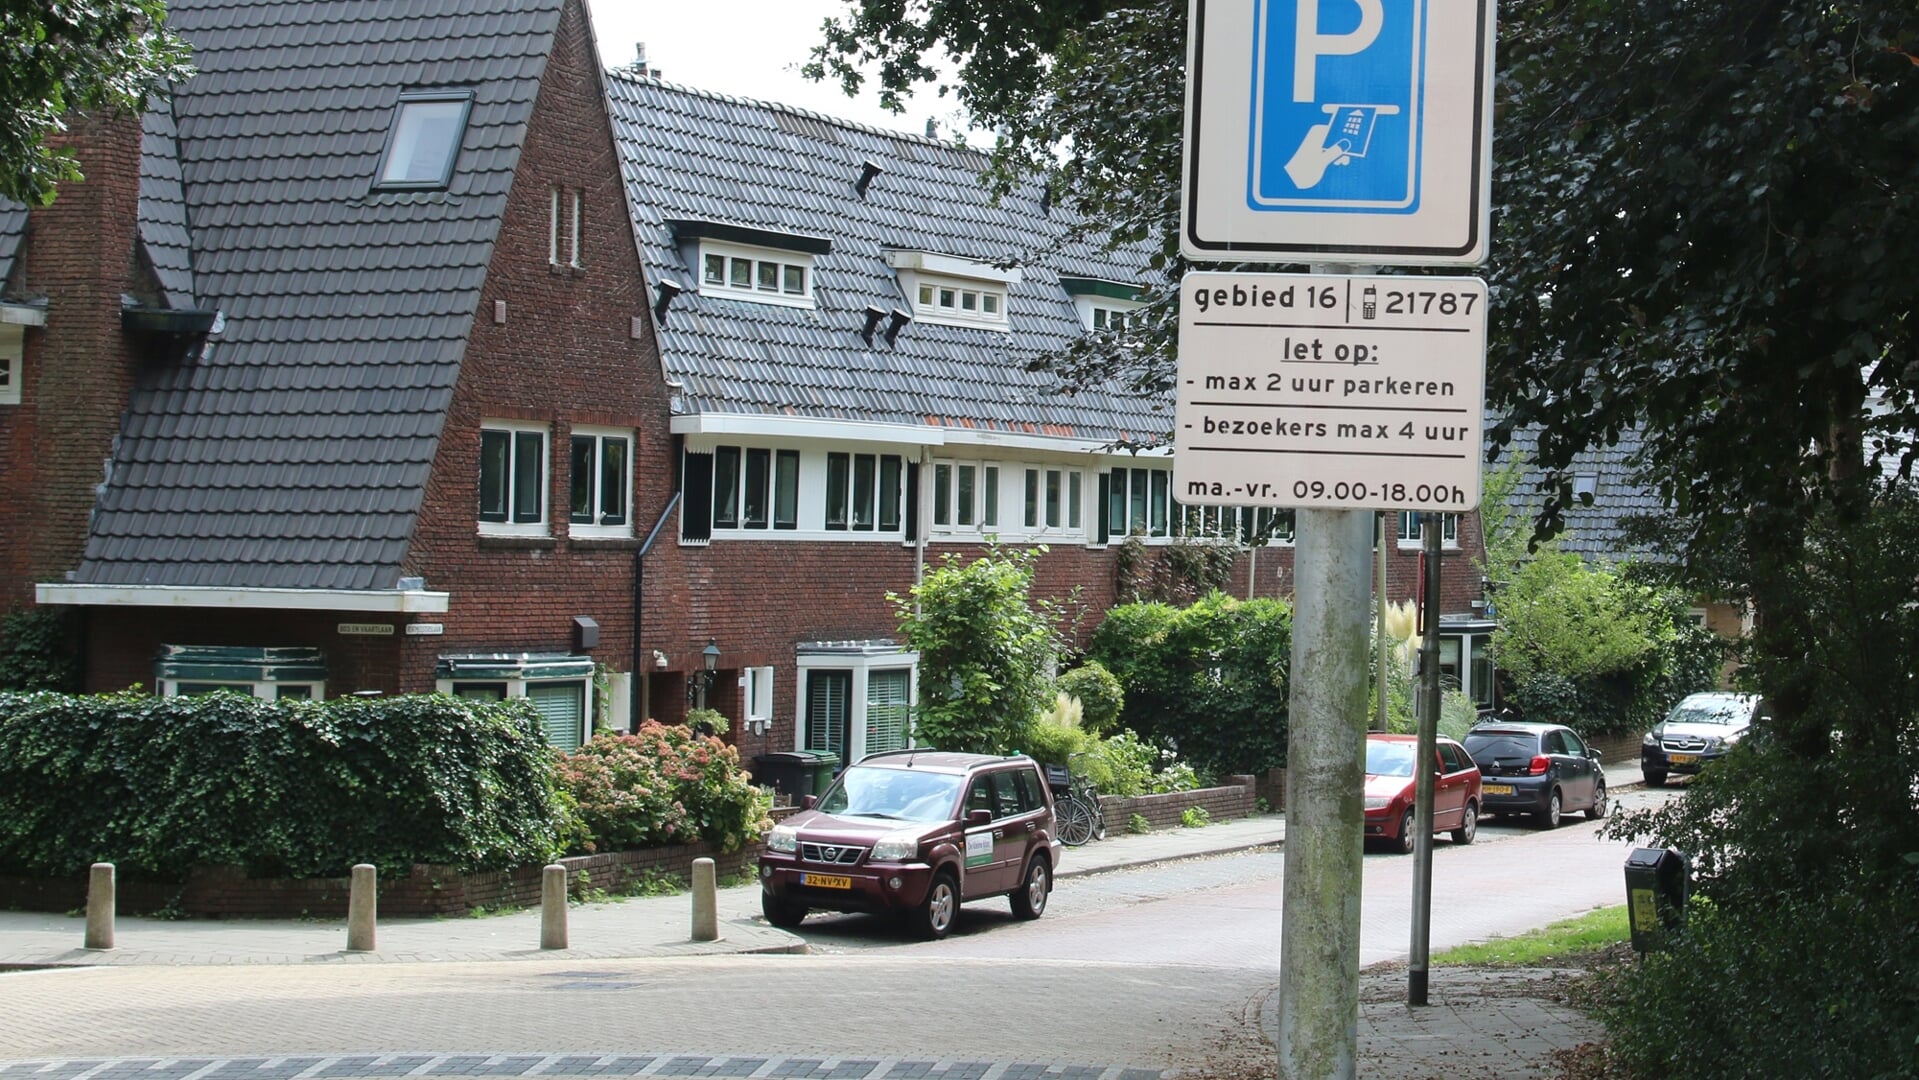 Randwijck is een van de wijken met een hoge gemiddelde WOZ-waarde (587.102 euro).